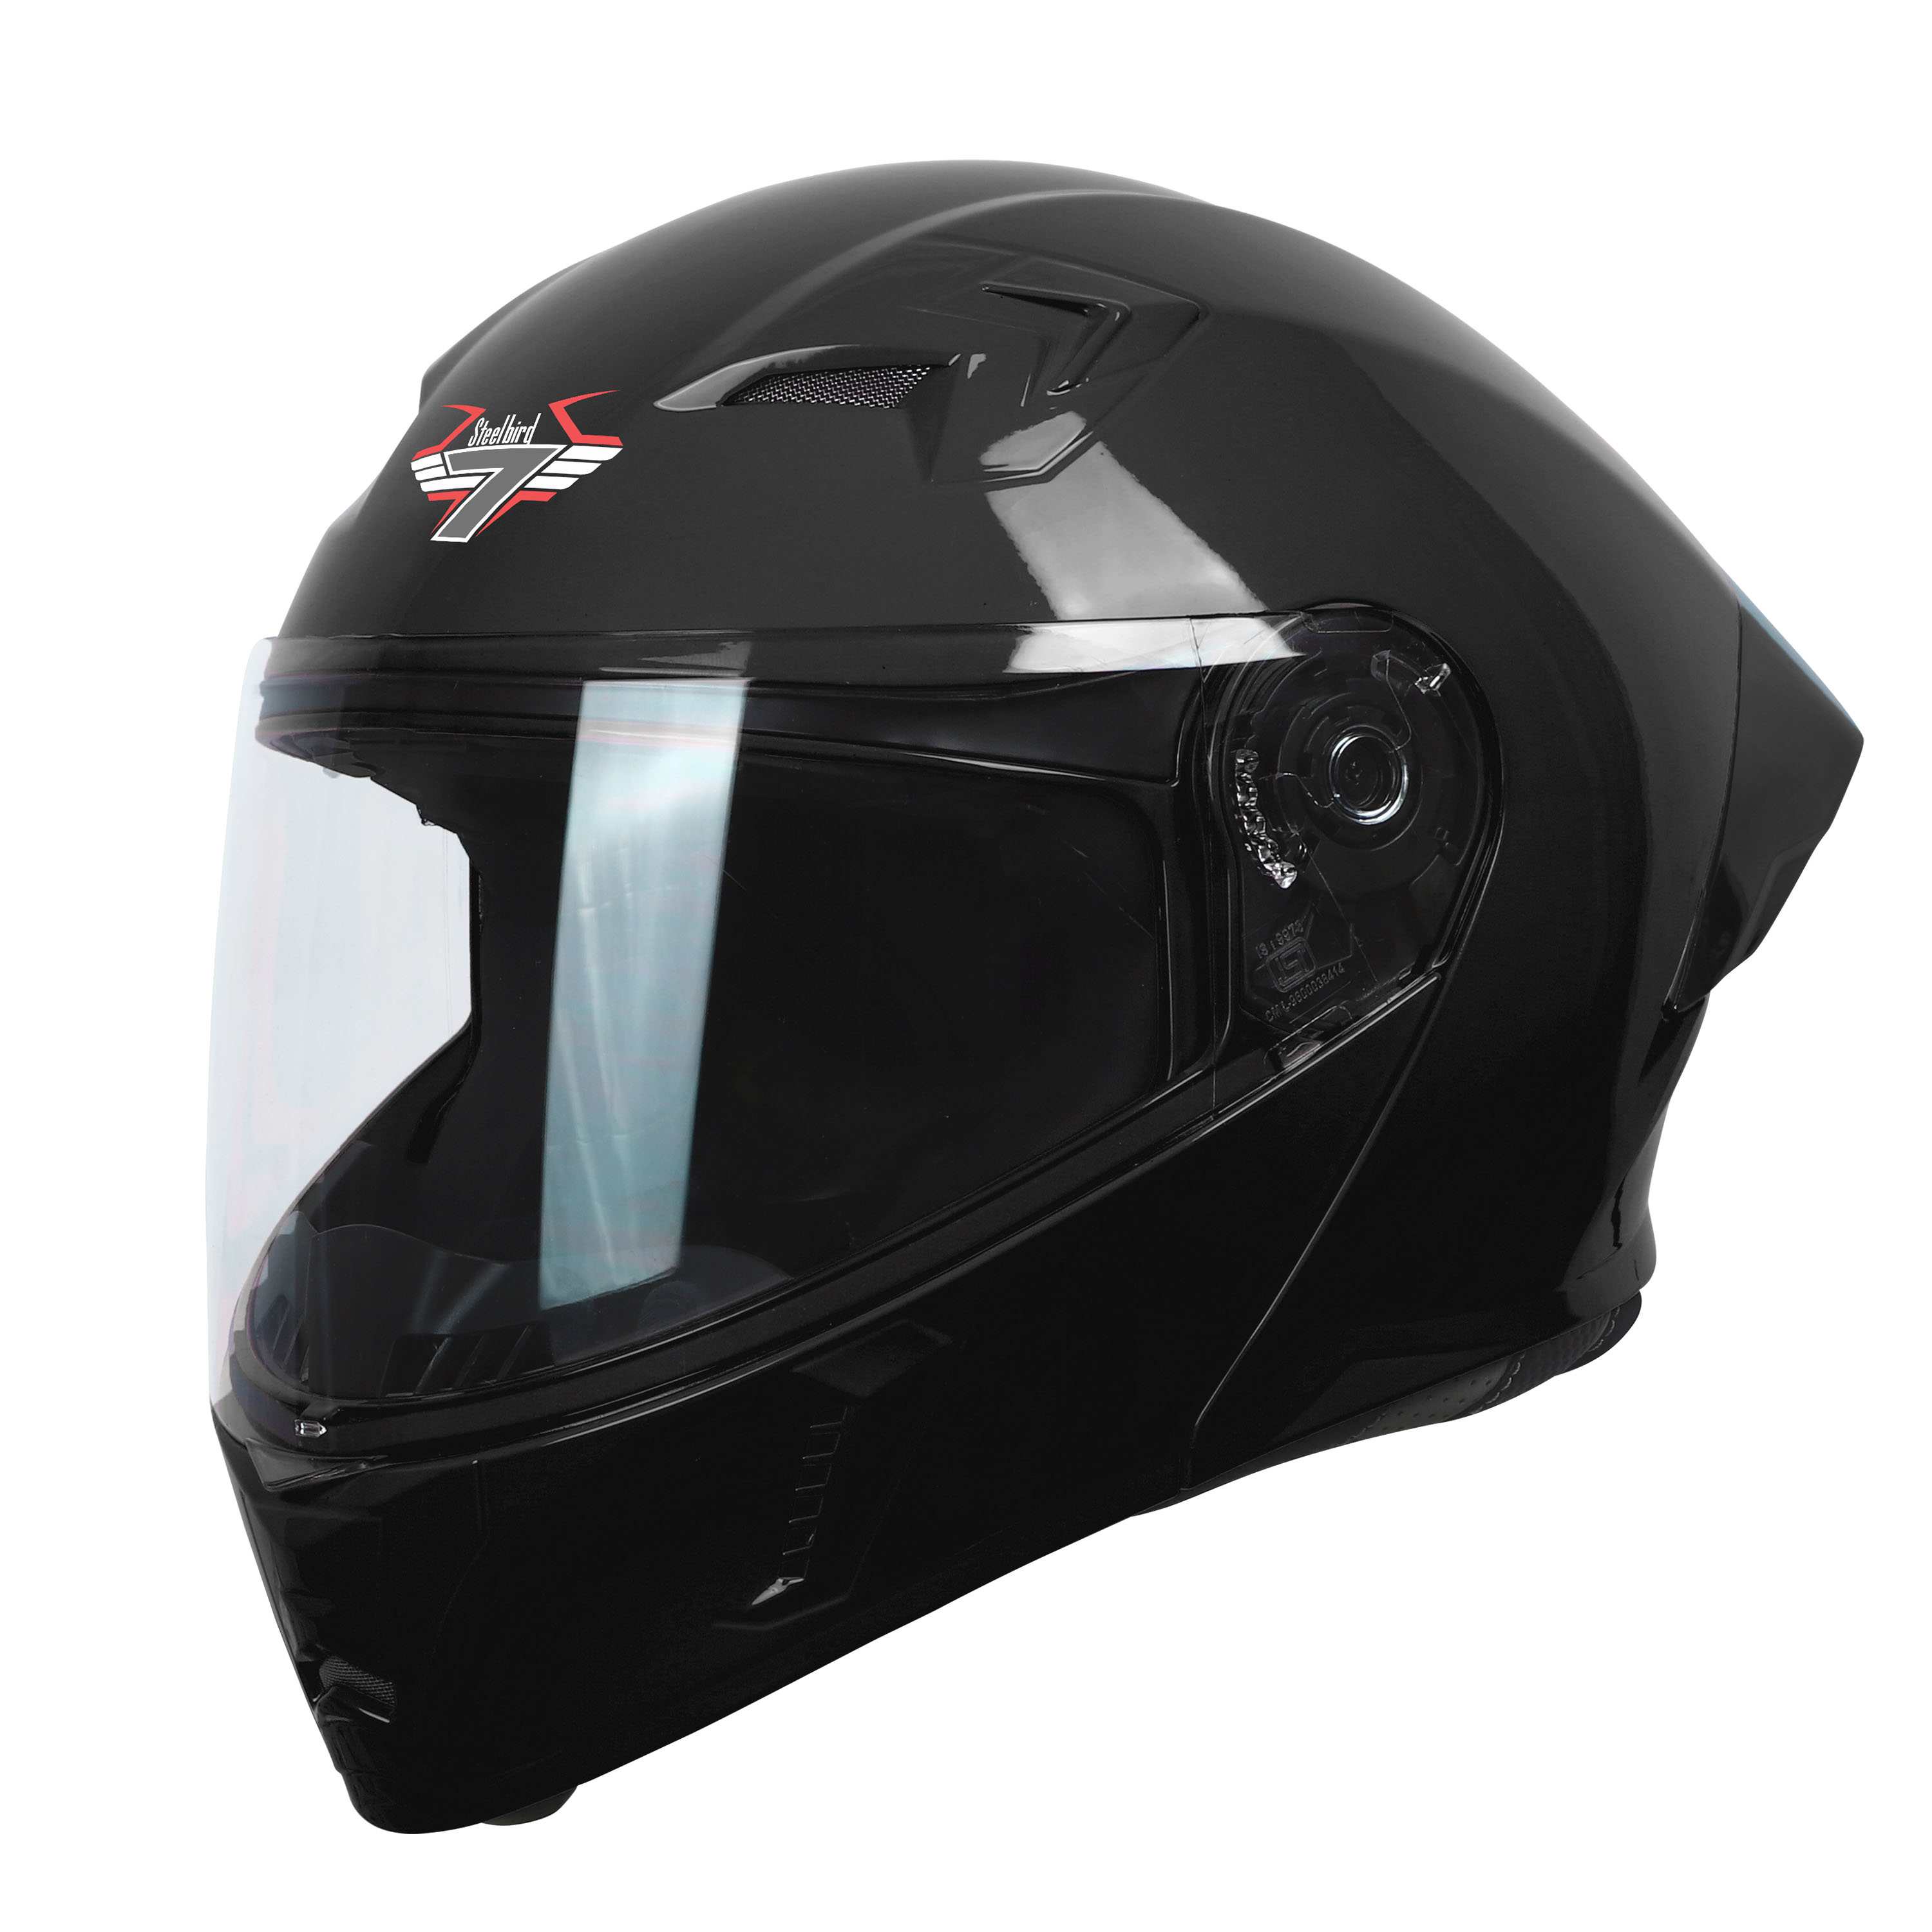 Steelbird SBA-20 7Wings ISI Certified Flip-Up Helmet With Black Spoiler For Men And Women (Matt Black With Clear Visor)